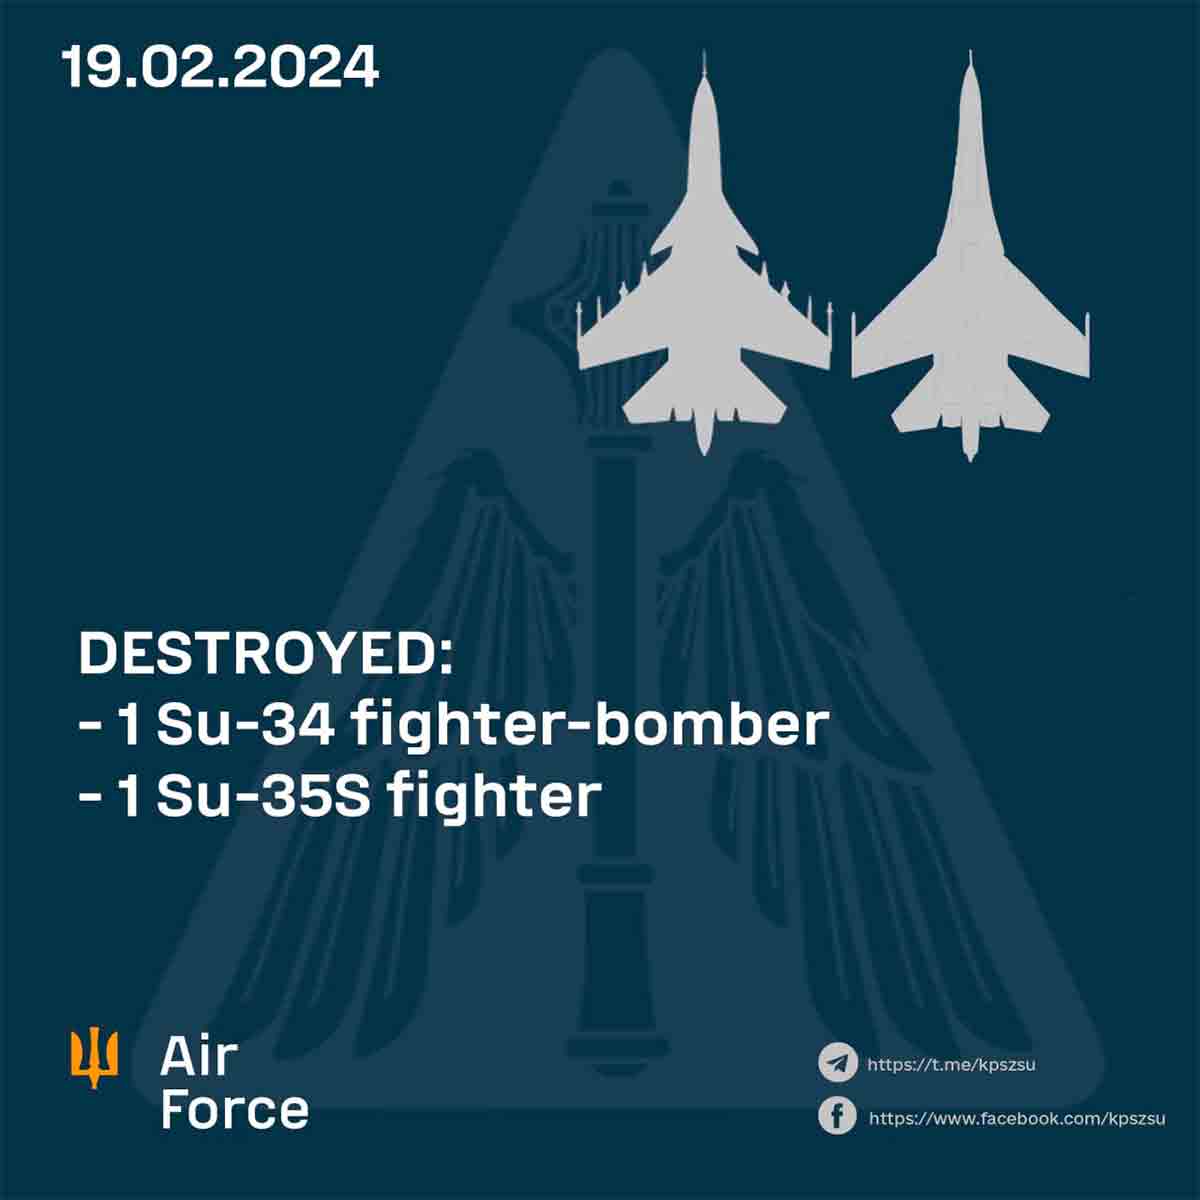 Ukrainan ilmavoima ilmoittaa kahden lisää Venäjän hävittäjän kaatumisesta, yhteensä 6 lentokonetta kolmessa päivässä